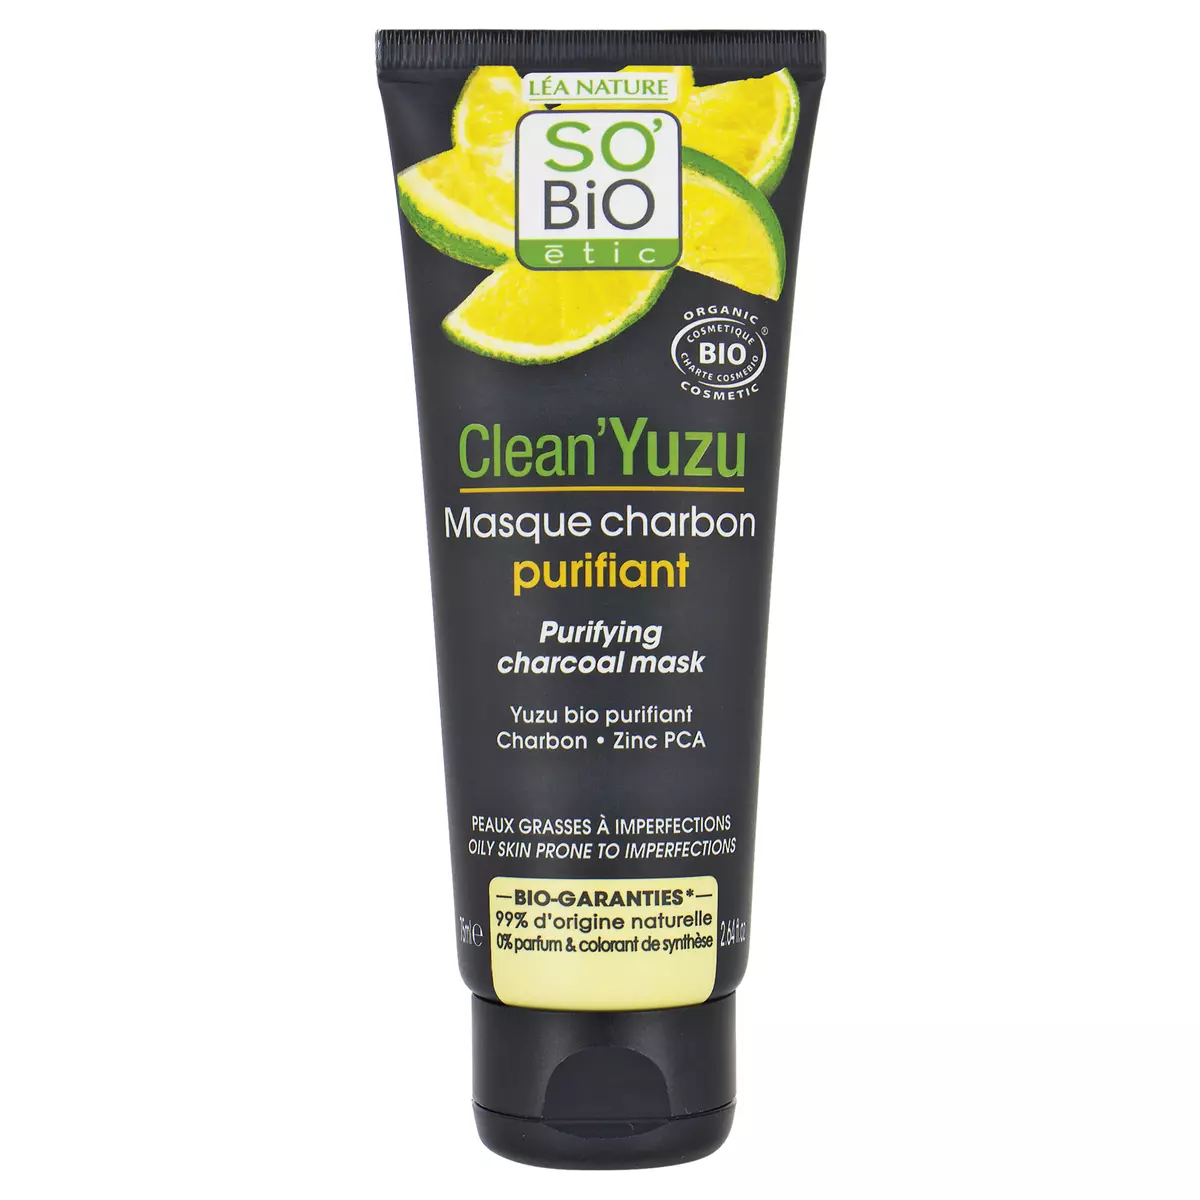 SO BIO ETIC Clean'Yuzu masque charbon purifiant bio peaux grasses à imperfections 75ml